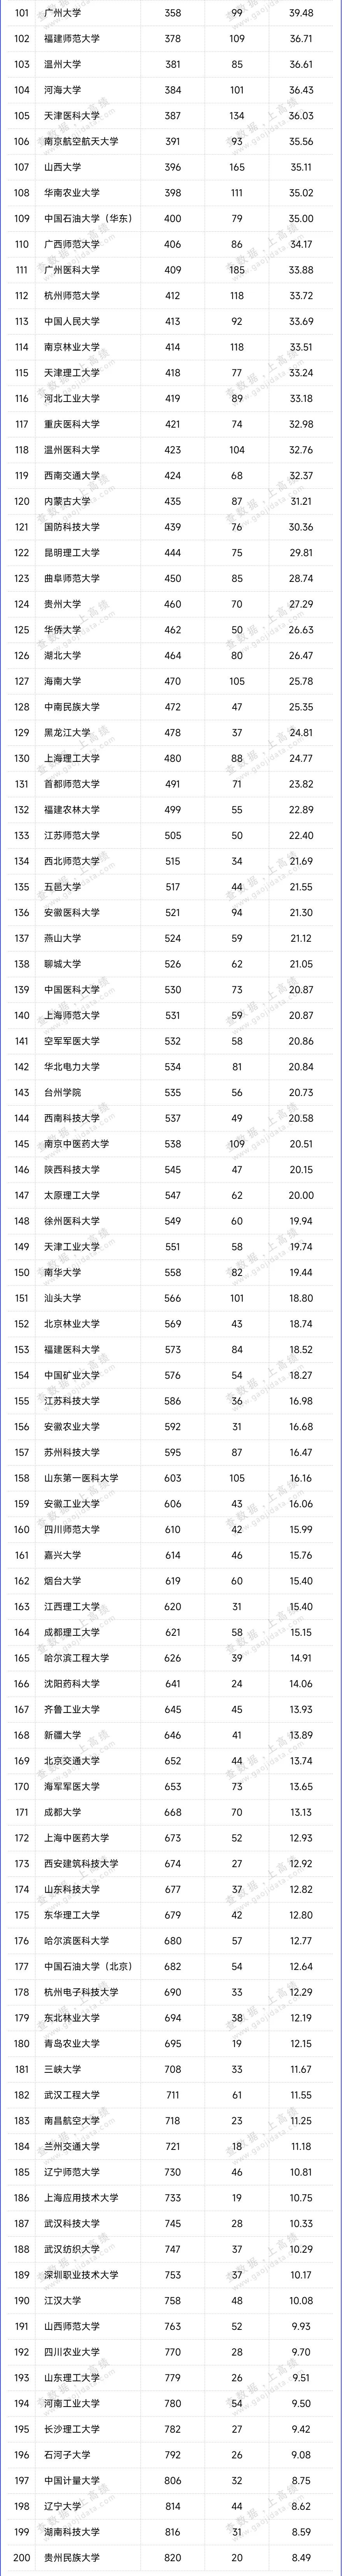 2023最新自然指数排名中国内地高校TOP200